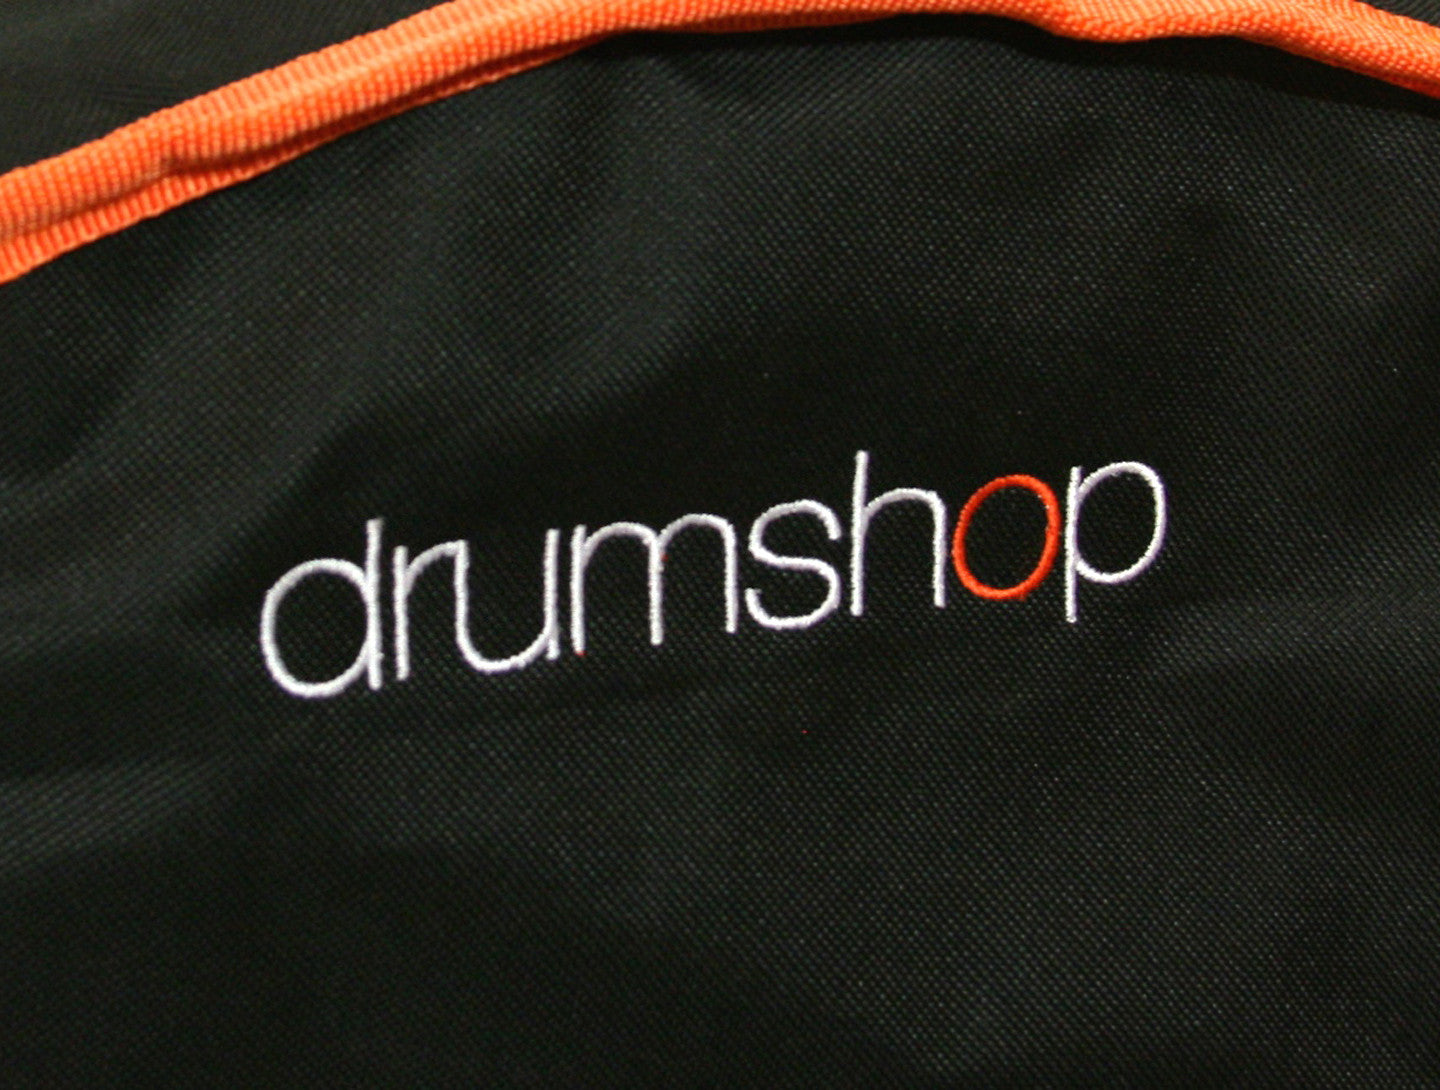 Drumshop 16